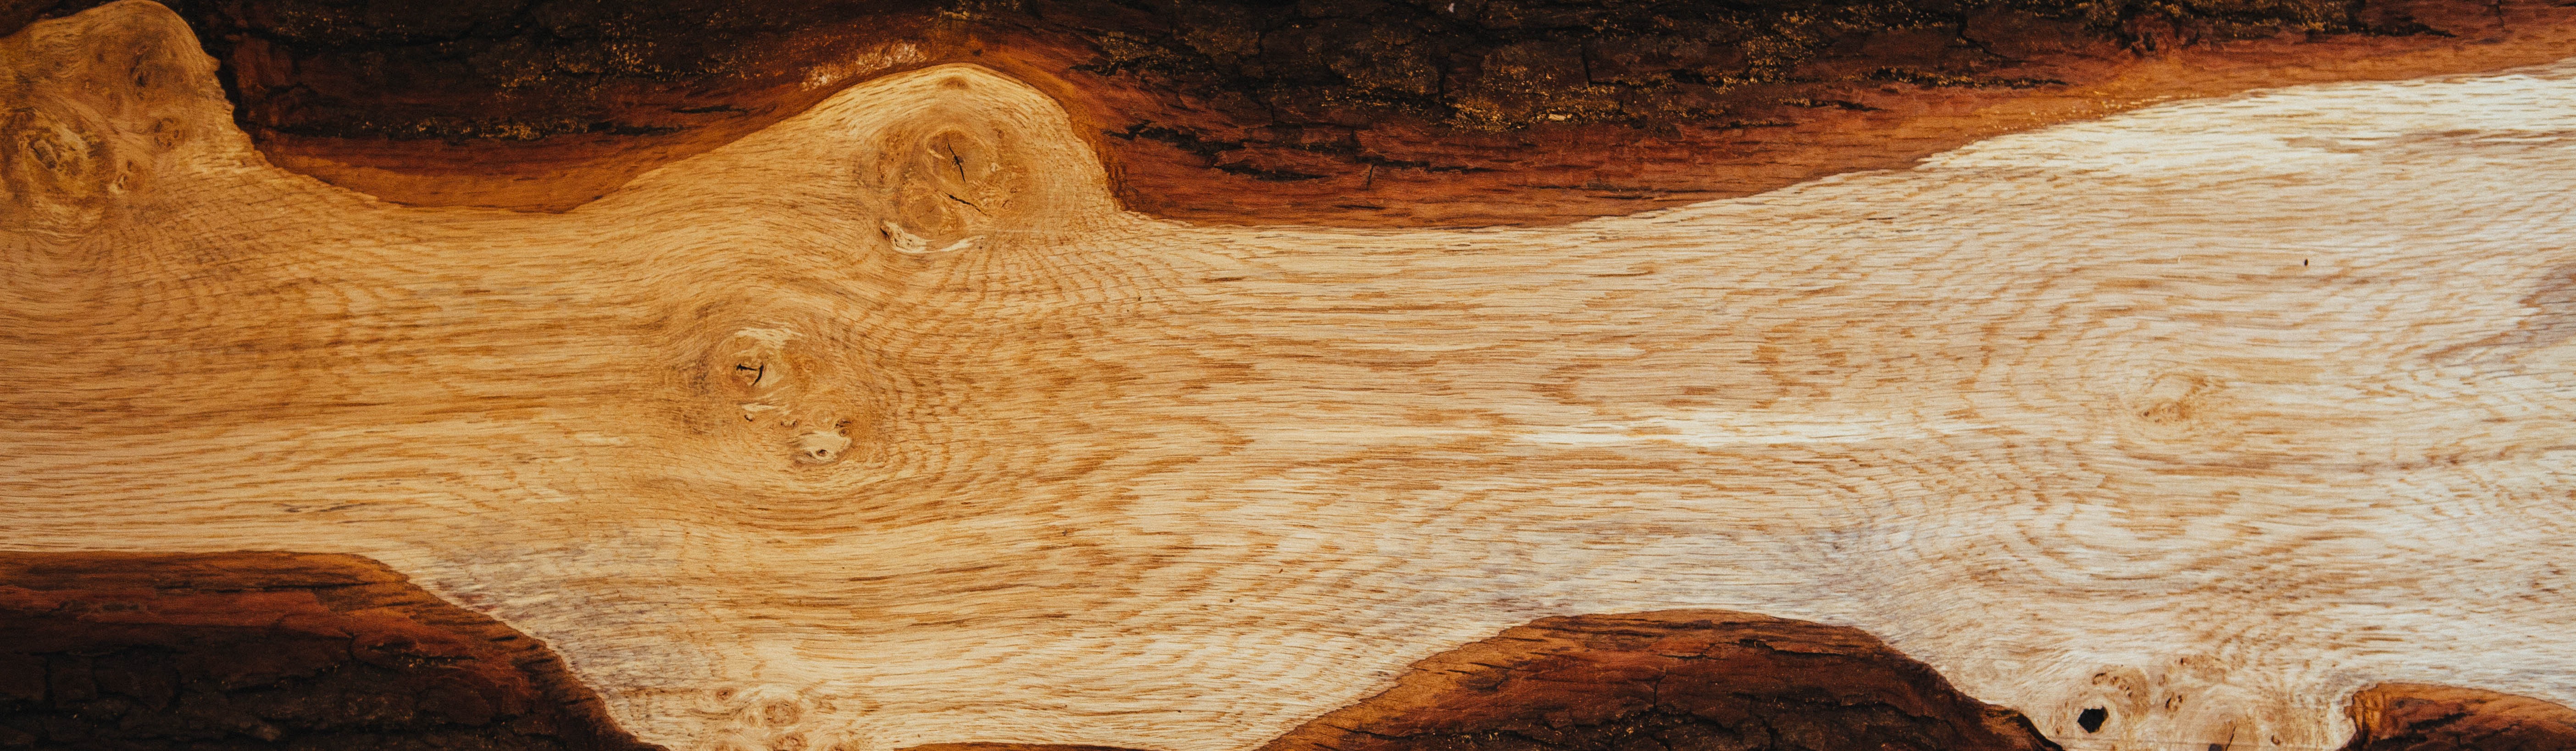 Фото бесплатно дерево, рок, древесина